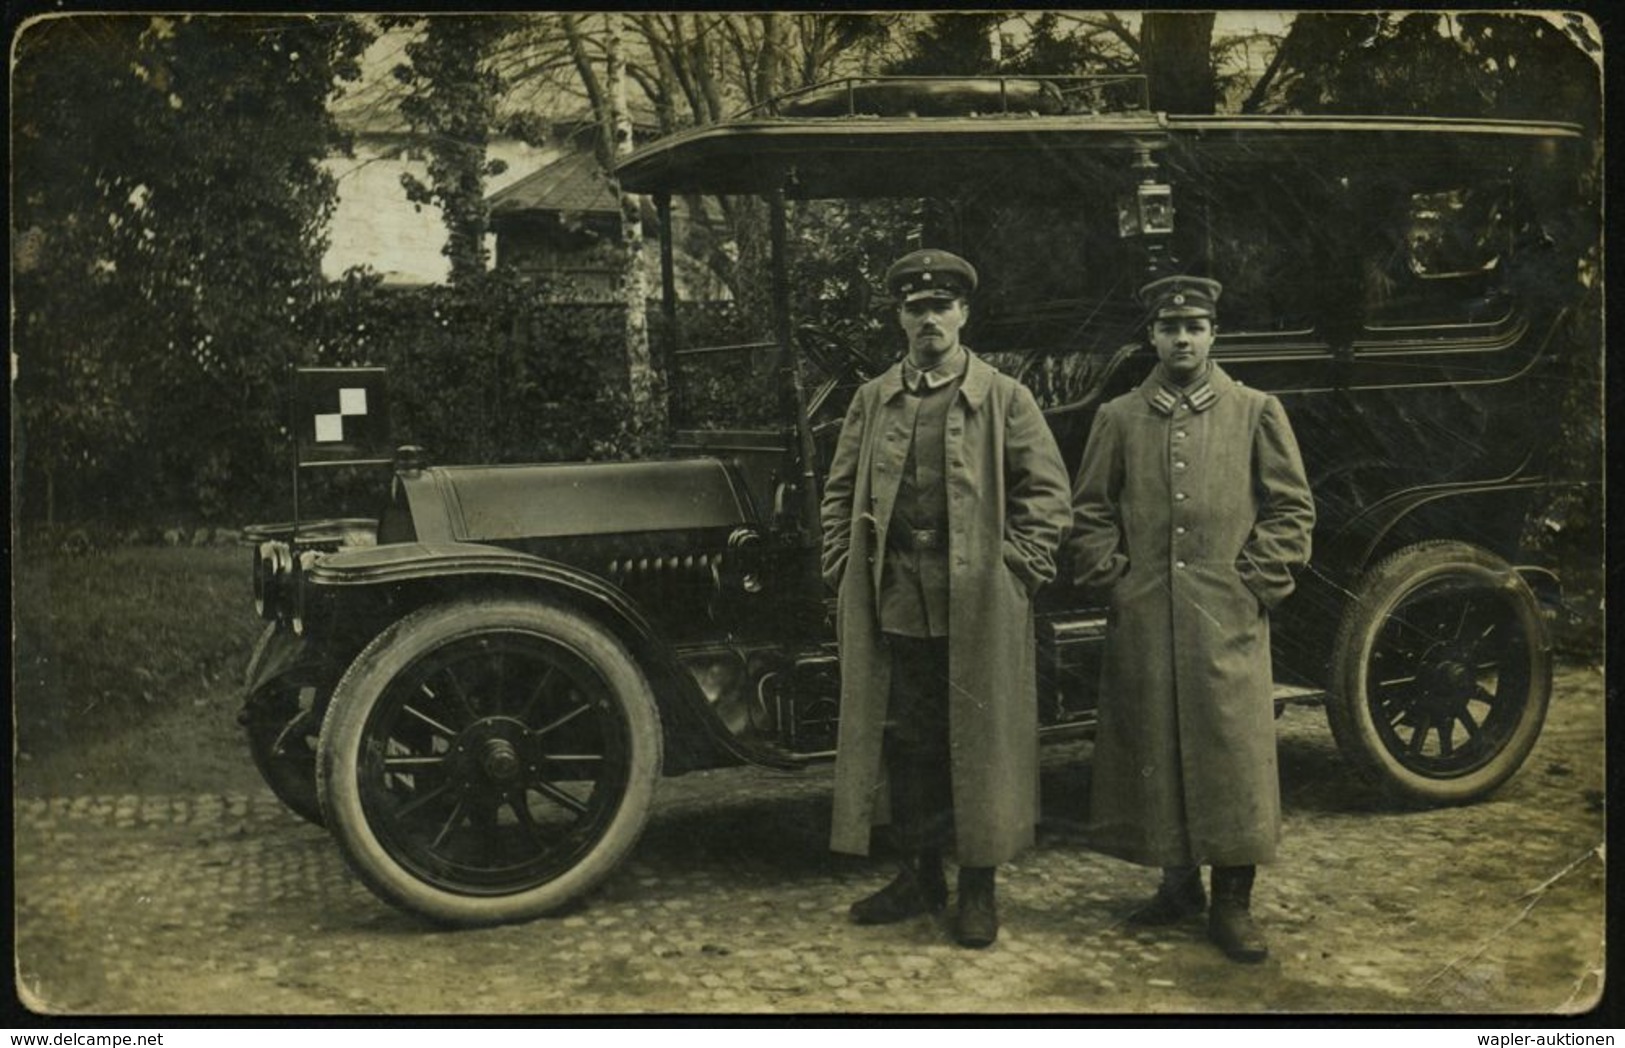 FREIBURG/ (BREISGAU) 1 1914 (19.11.) 1K-Steg Auf S/w.-Foto-Ak.: Militär-PKW Mit Besatzung (mit Taktischer Flagge) Feldpo - Automobili